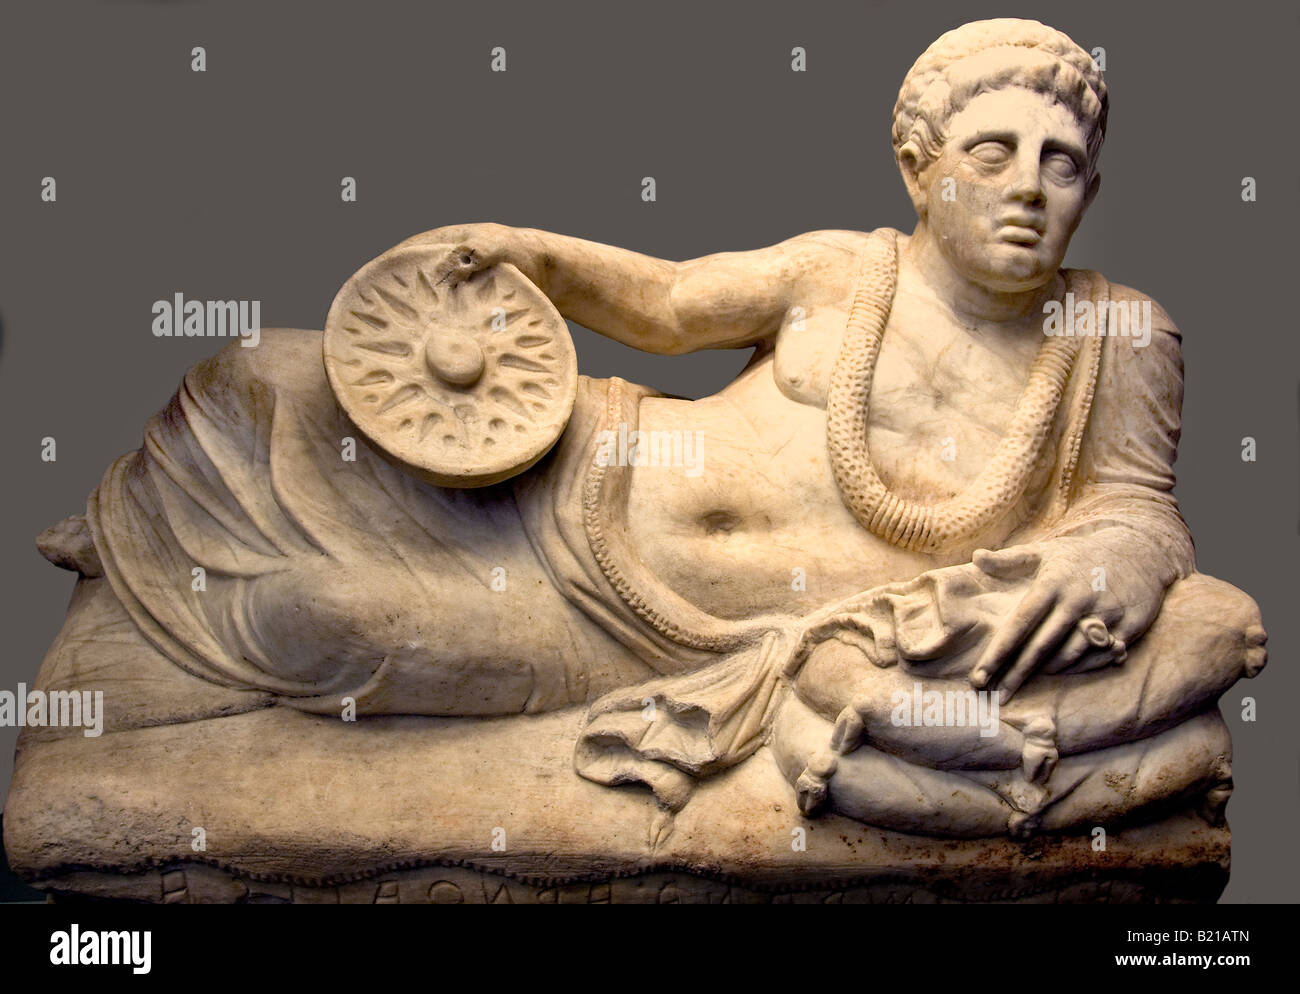 Hombre de pecho etrusco panel 200 100 BC chiusi etruscian etruscos arqueología Italia civilización Foto de stock